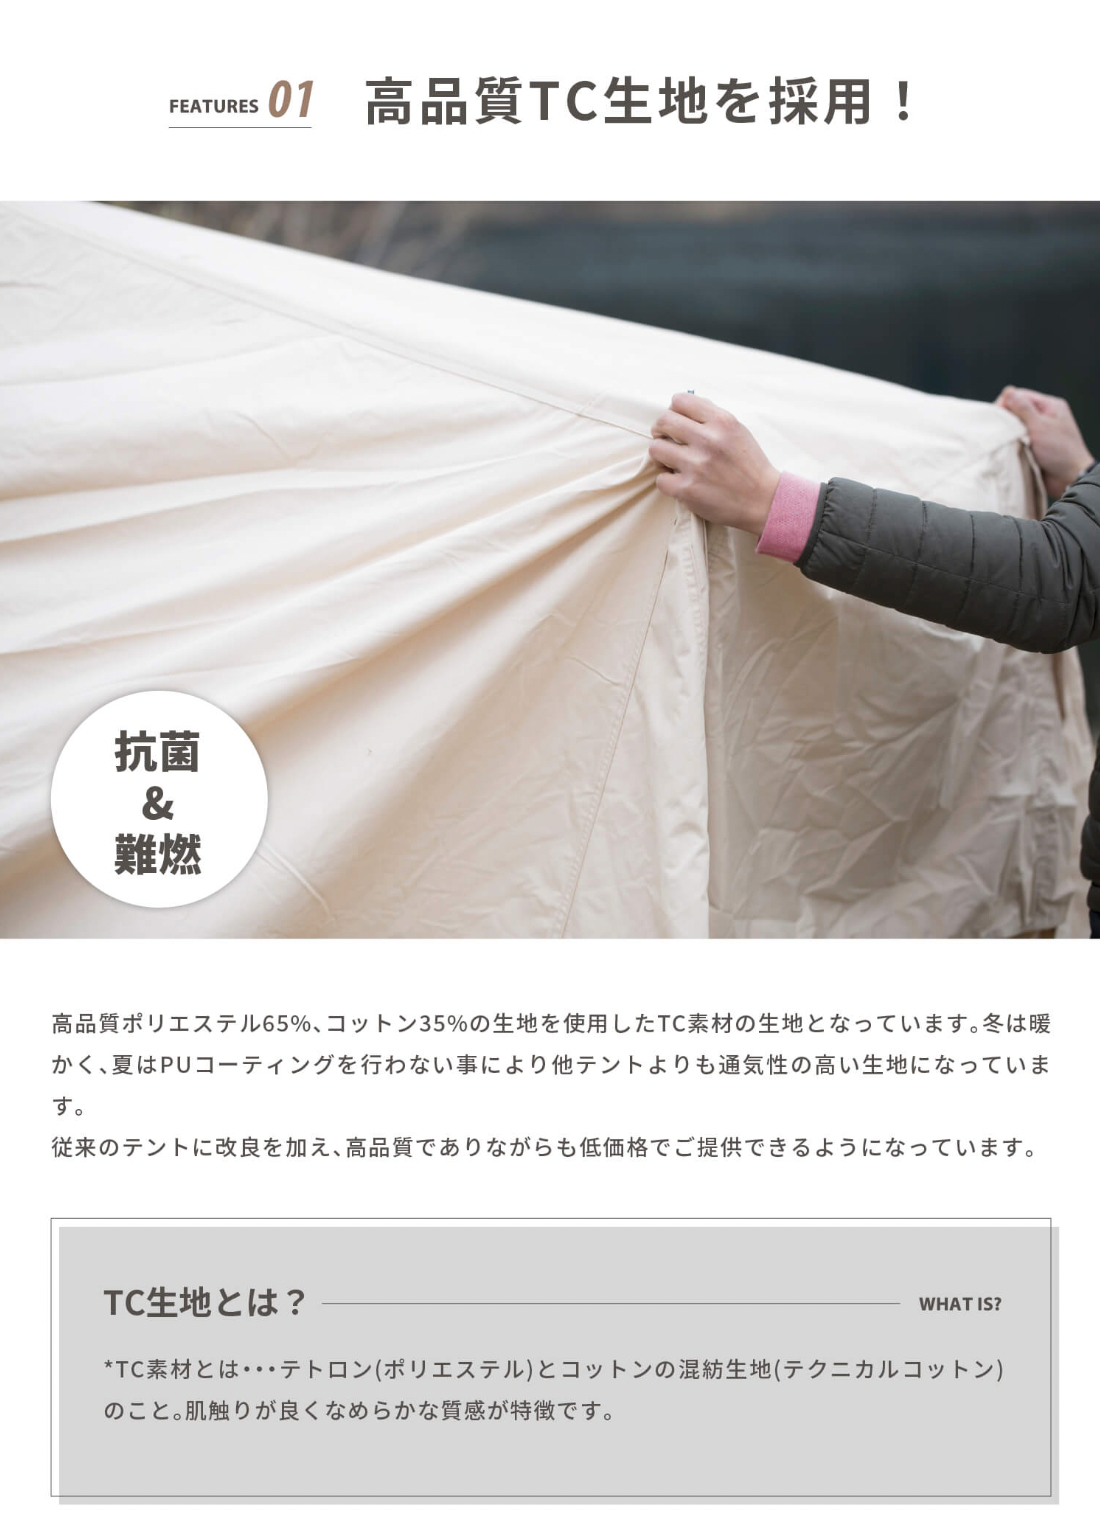 Bello300 鐘型科技棉帳篷3~4人用